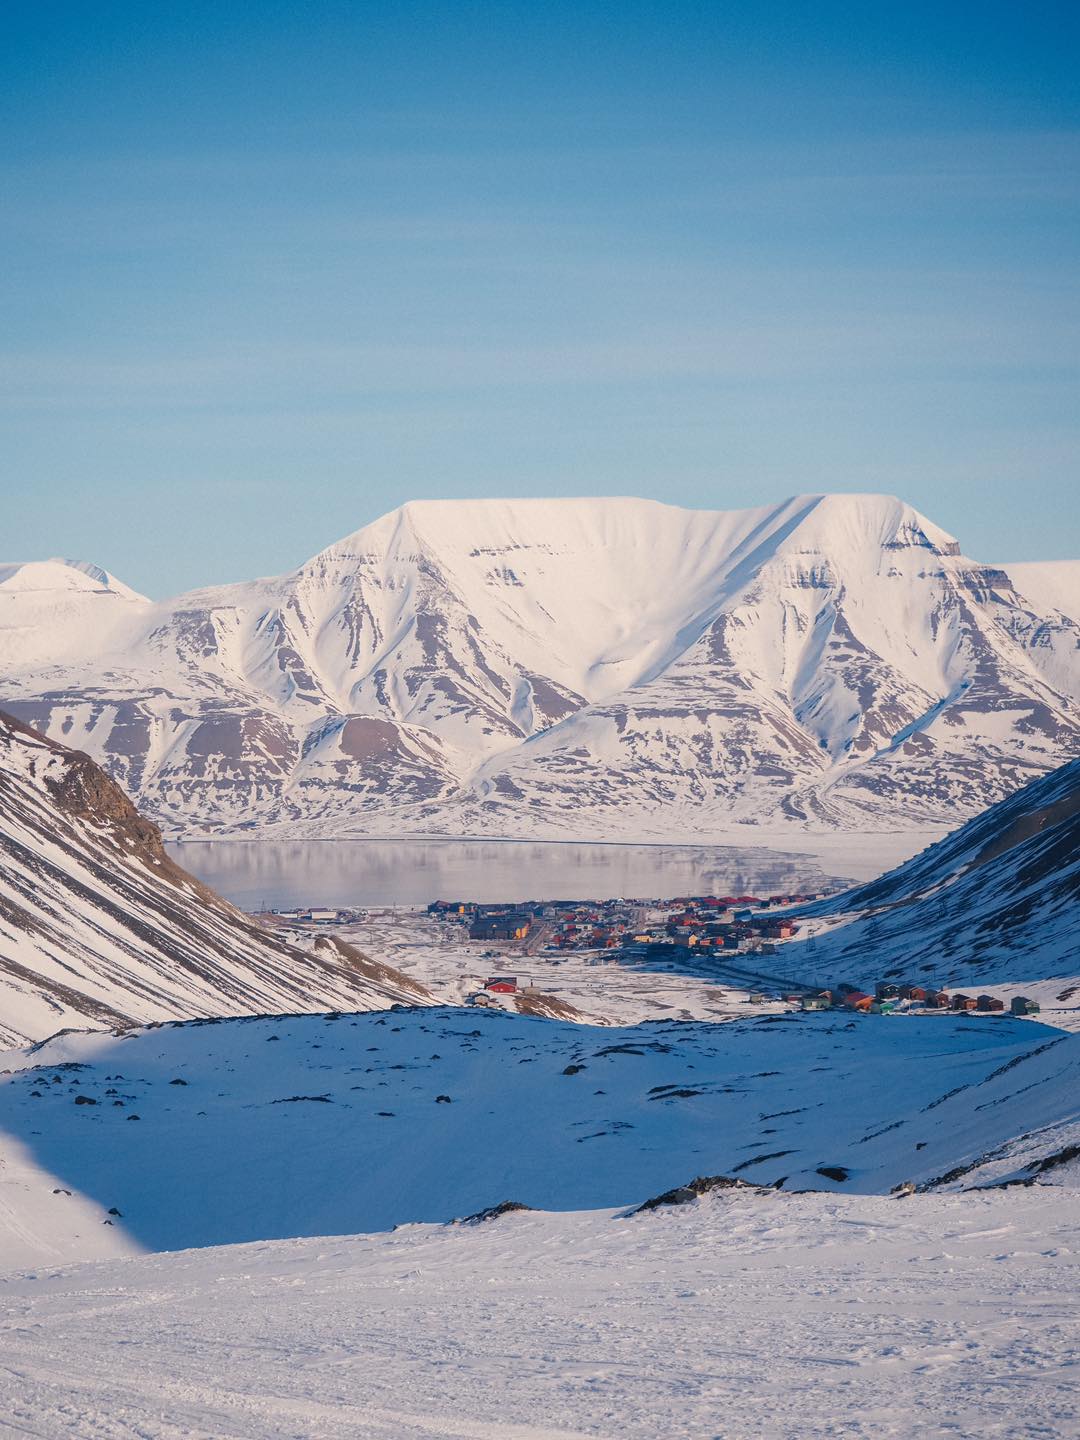 Νορβηγία: Ακυρώνει την πώληση ακινήτων στην αρκτική περιοχή Σβάλμπαρντ